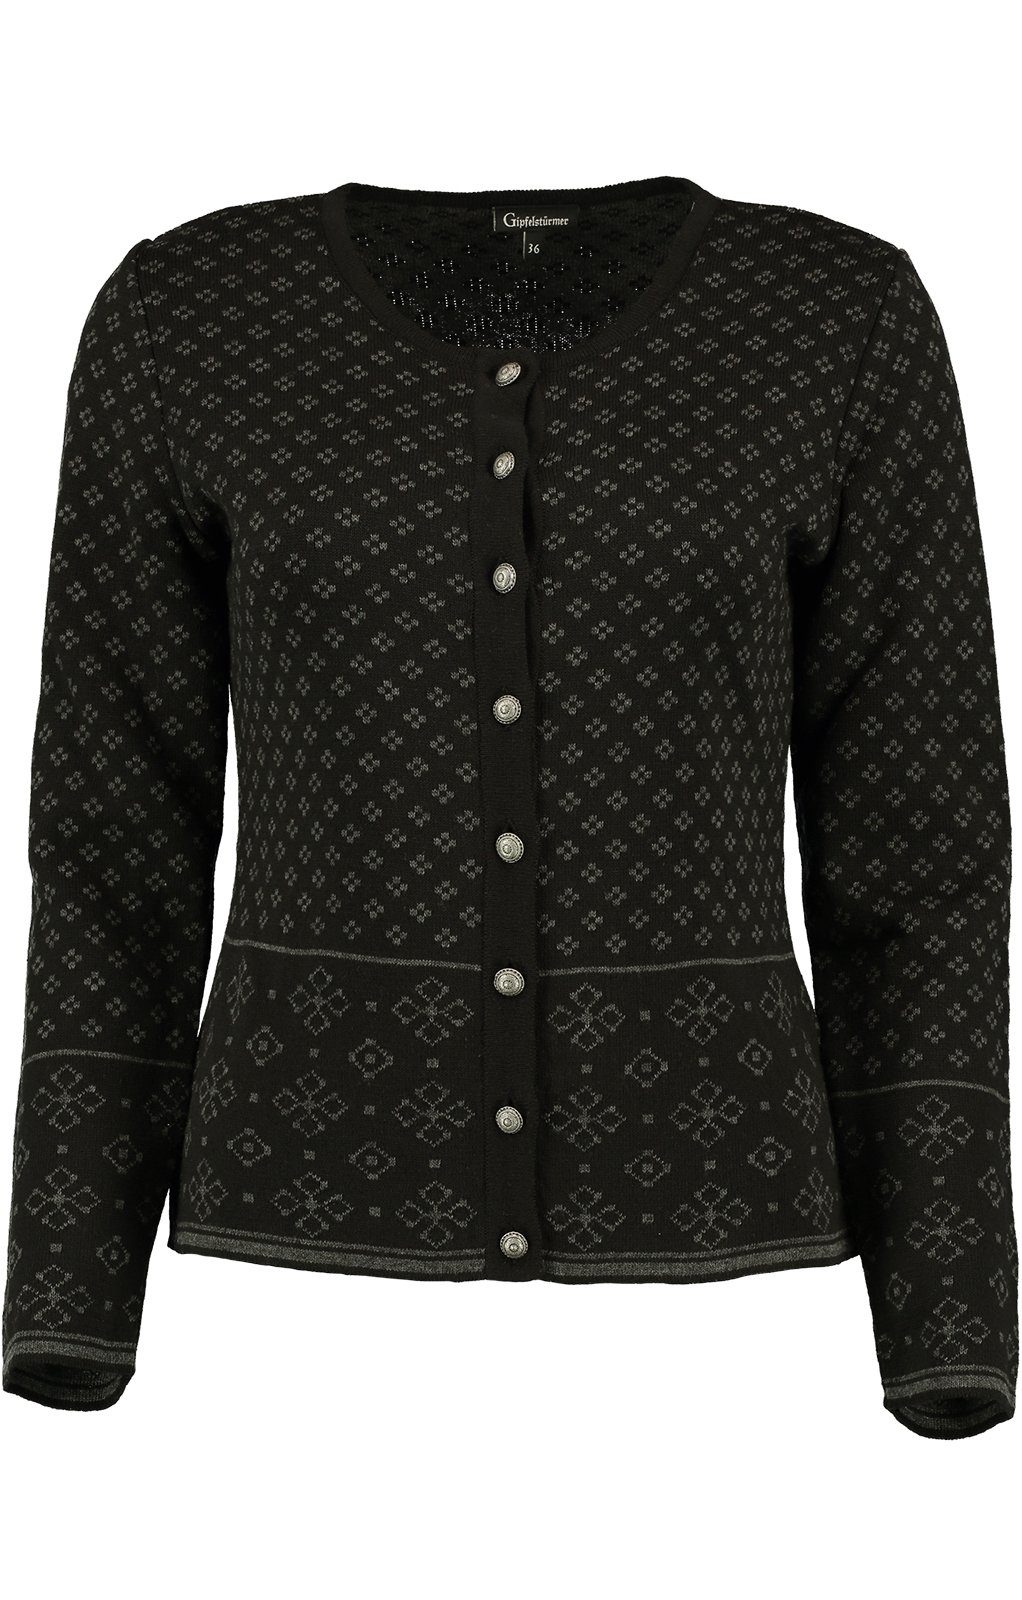 Damen Jacken OS-Trachten Trachtenjacke Strickjacke MAYA schwarz